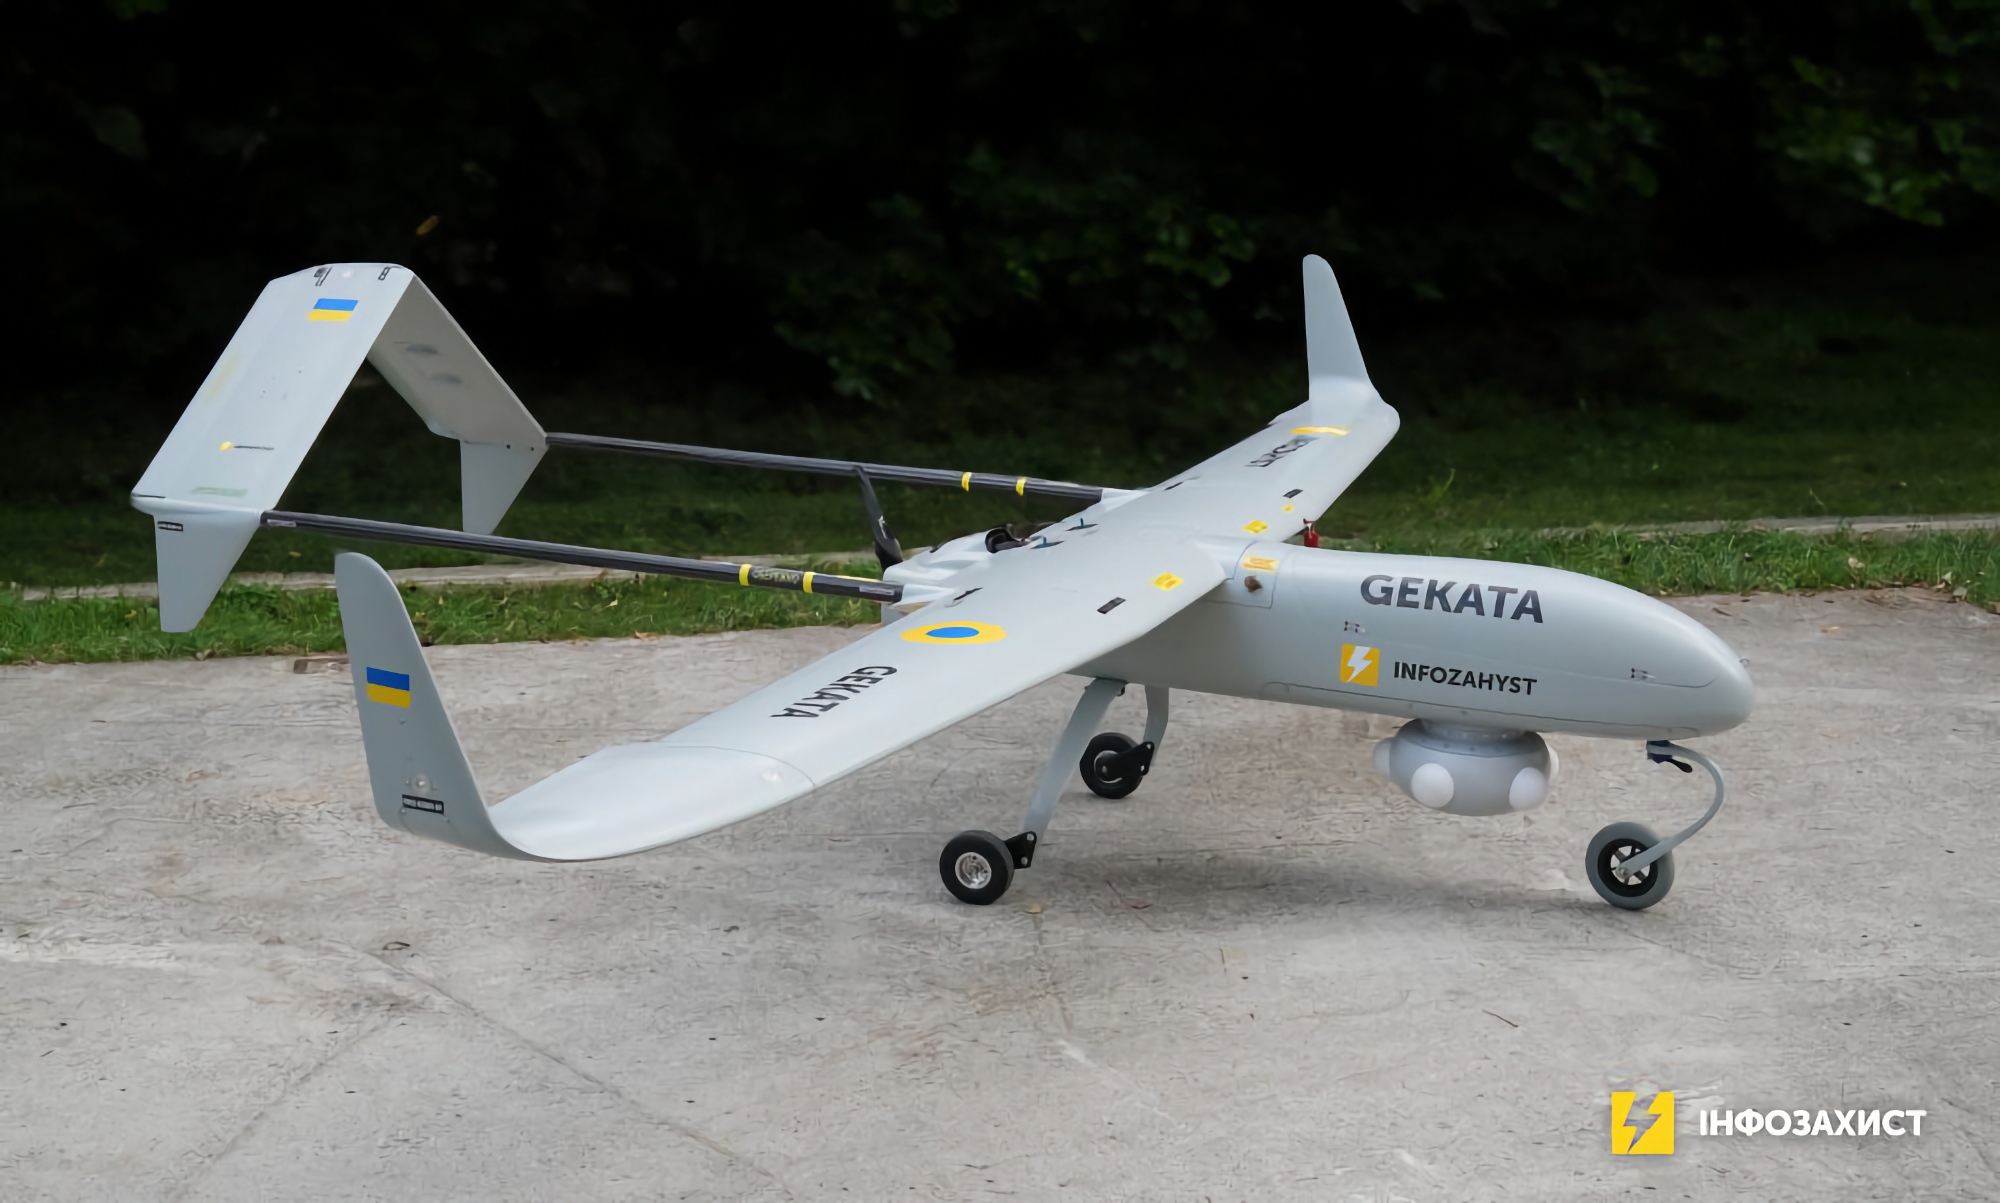 Ukraina rozpoczyna testy nowego bezzałogowego samolotu zwiadowczego Gekata, który będzie mógł pozostawać w powietrzu do 12 godzin i wykrywać cele w odległości do 450 km.